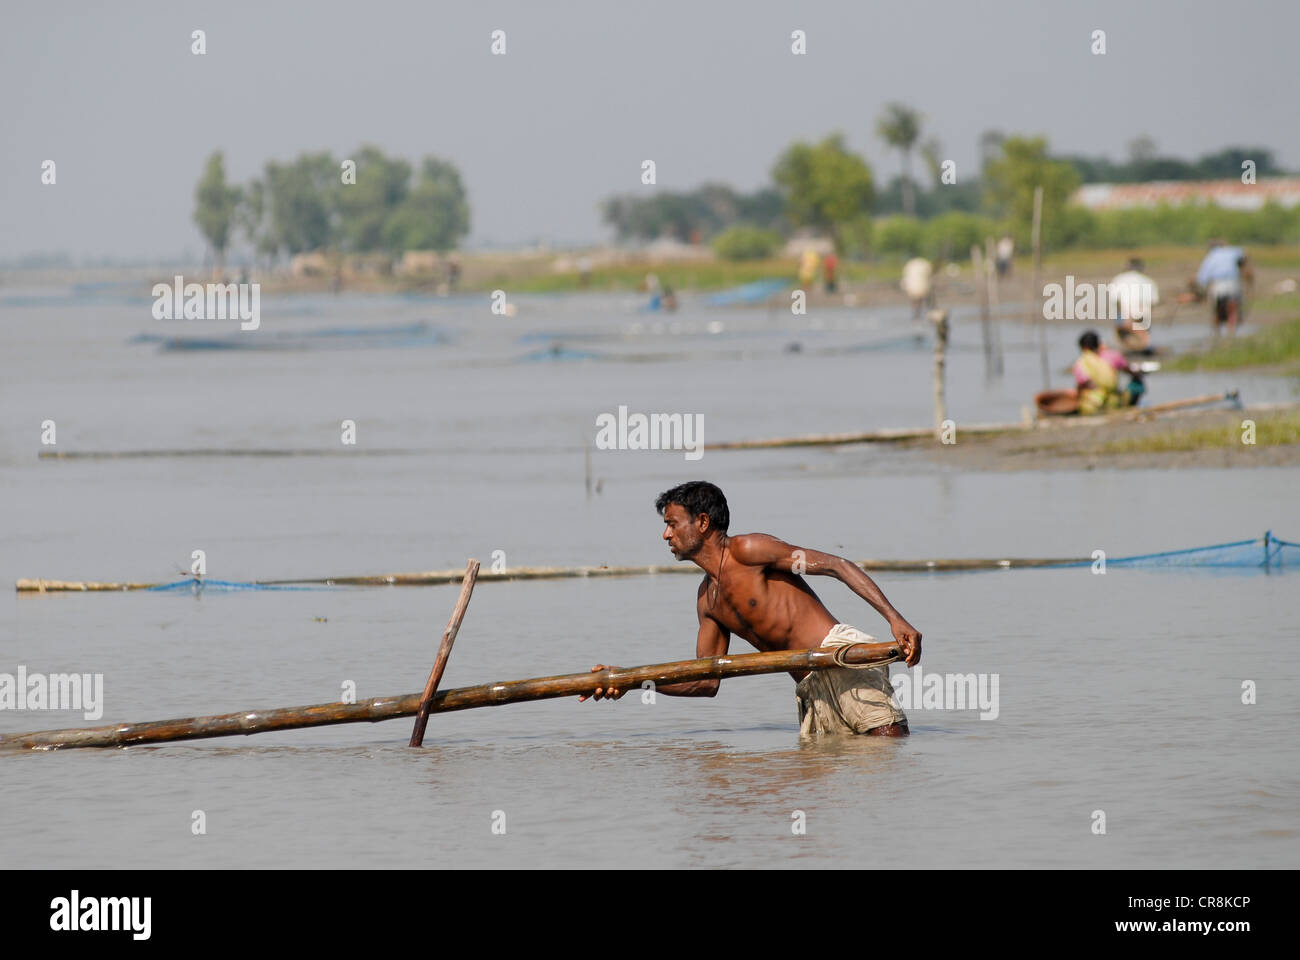 Bangladesh , villaggio Kalabogi presso il river Shibsha vicino alla baia del Bengala, i popoli sono i più colpiti dai cambiamenti climatici, pesce con ingranaggio net Foto Stock